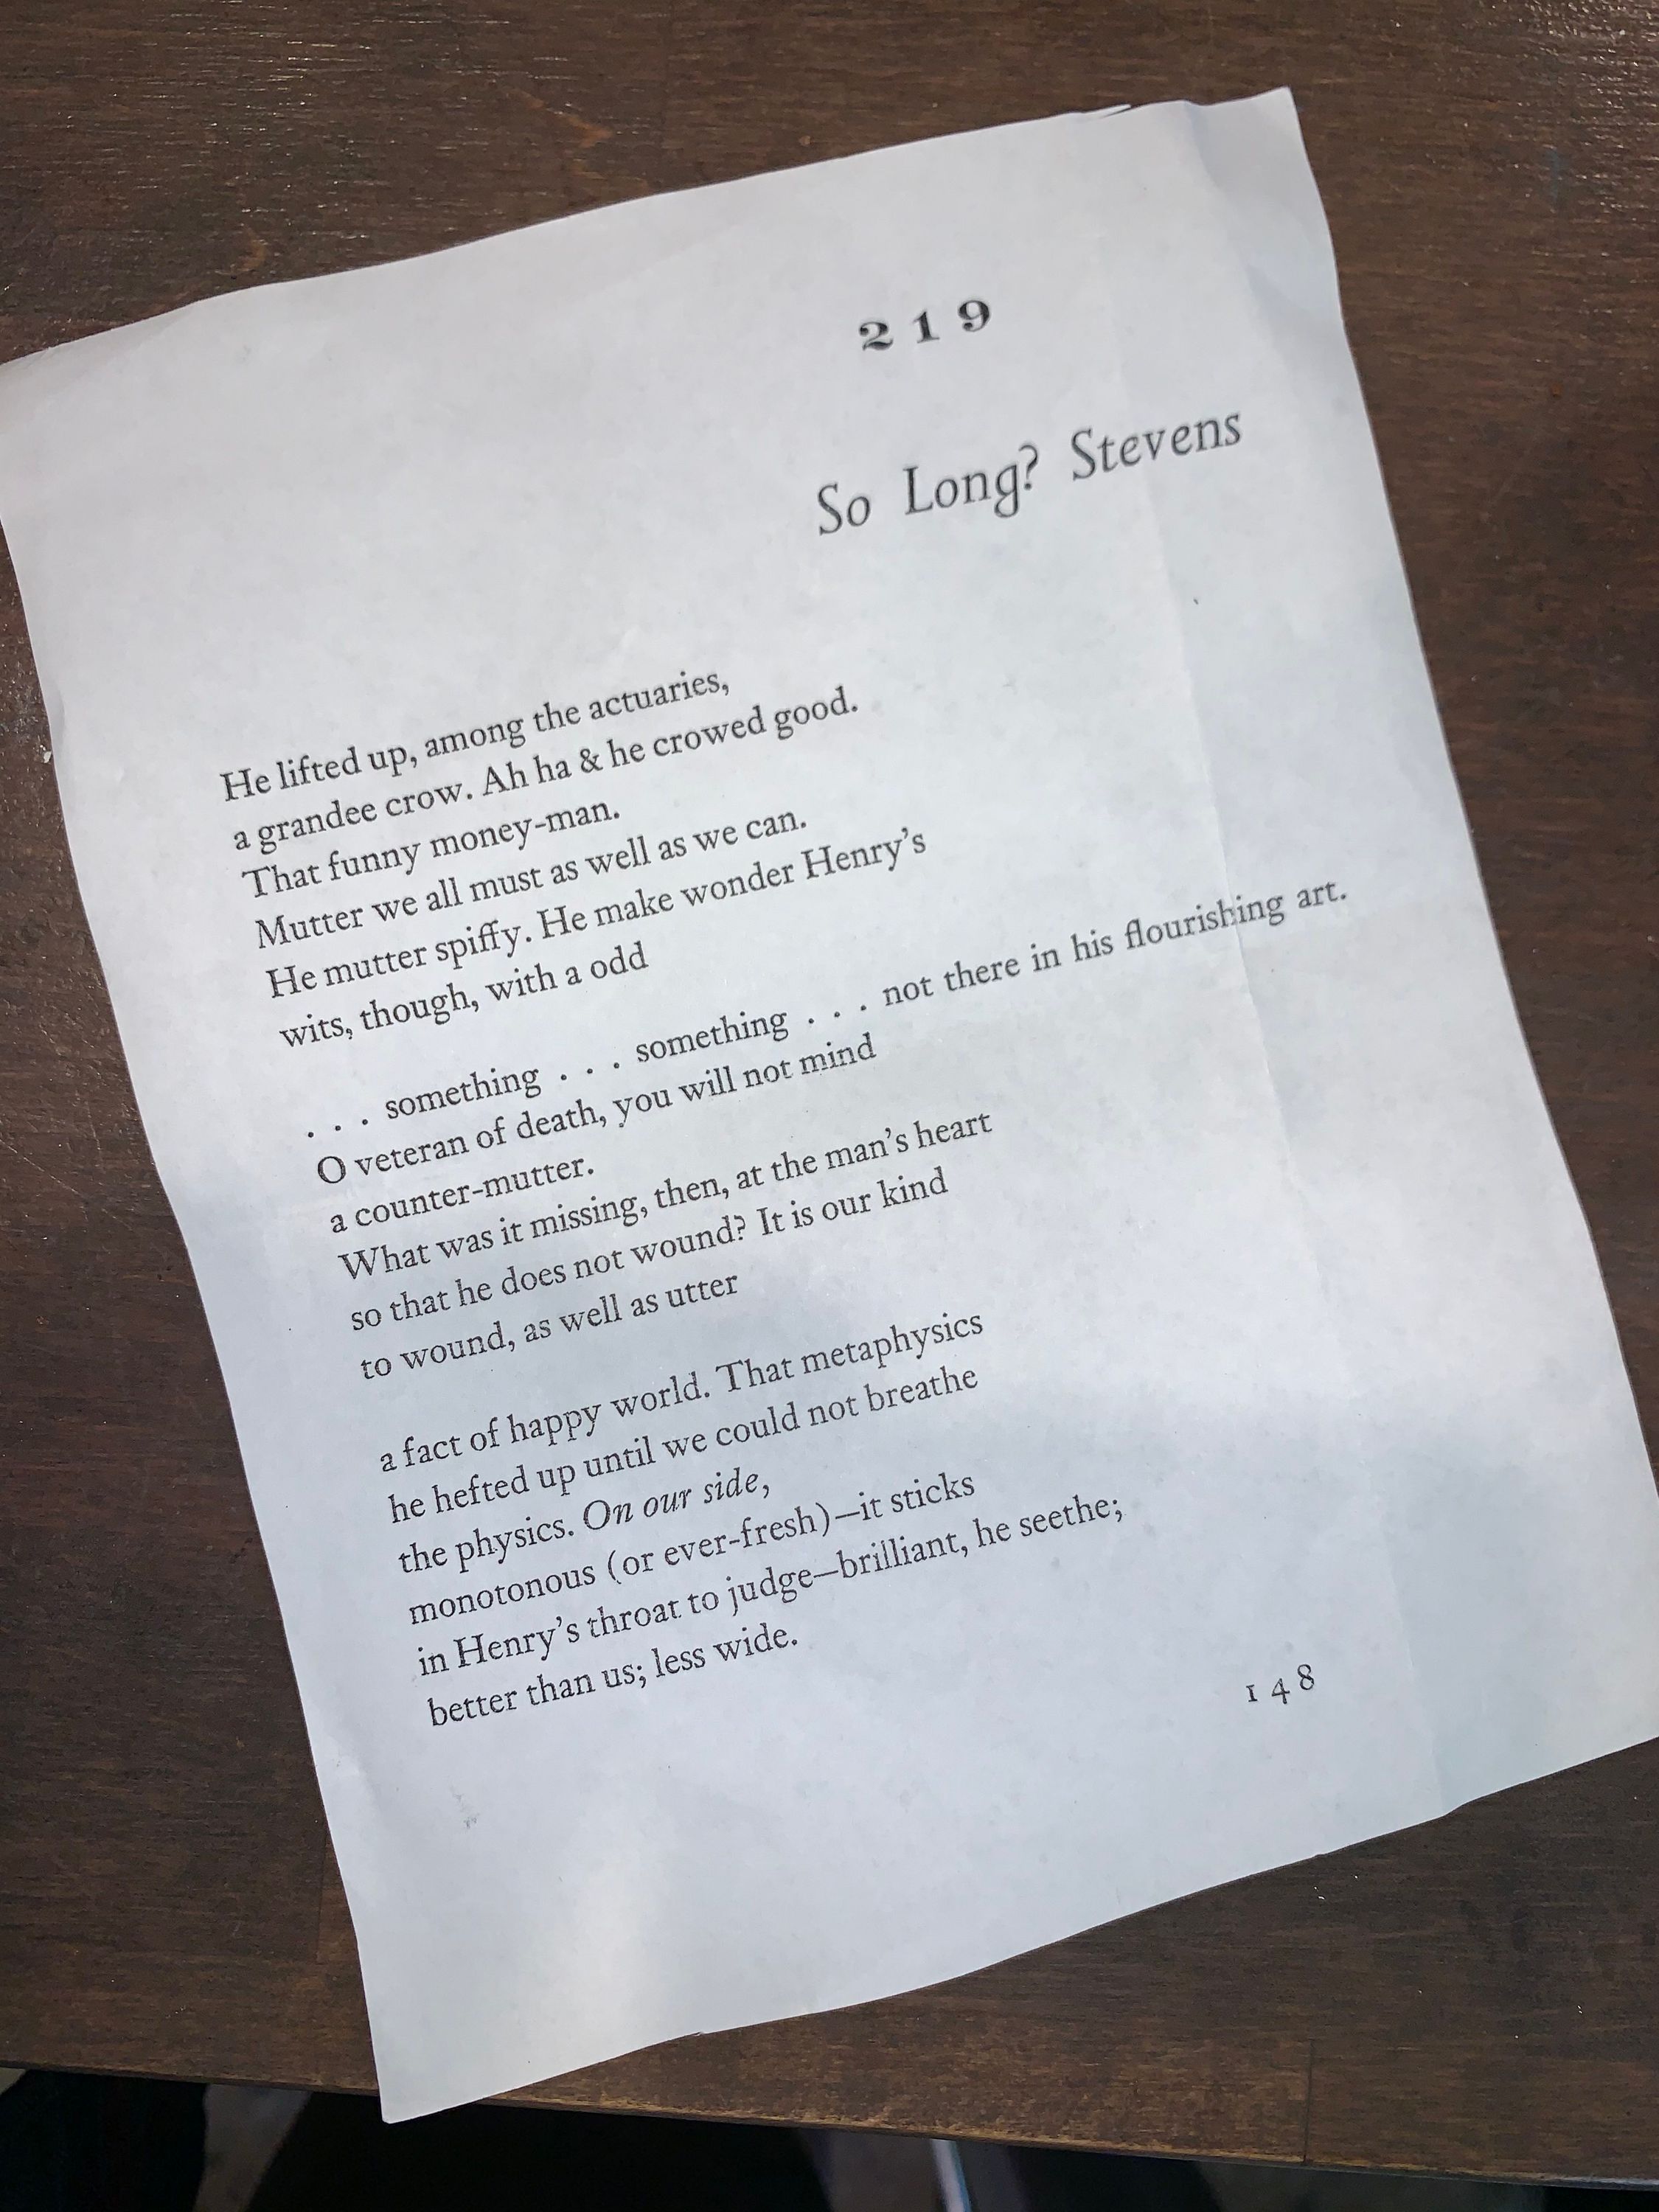 John Berryman’s “So Long? Stevens” from Dream Songs, no. 219; photocopy from David Malouf